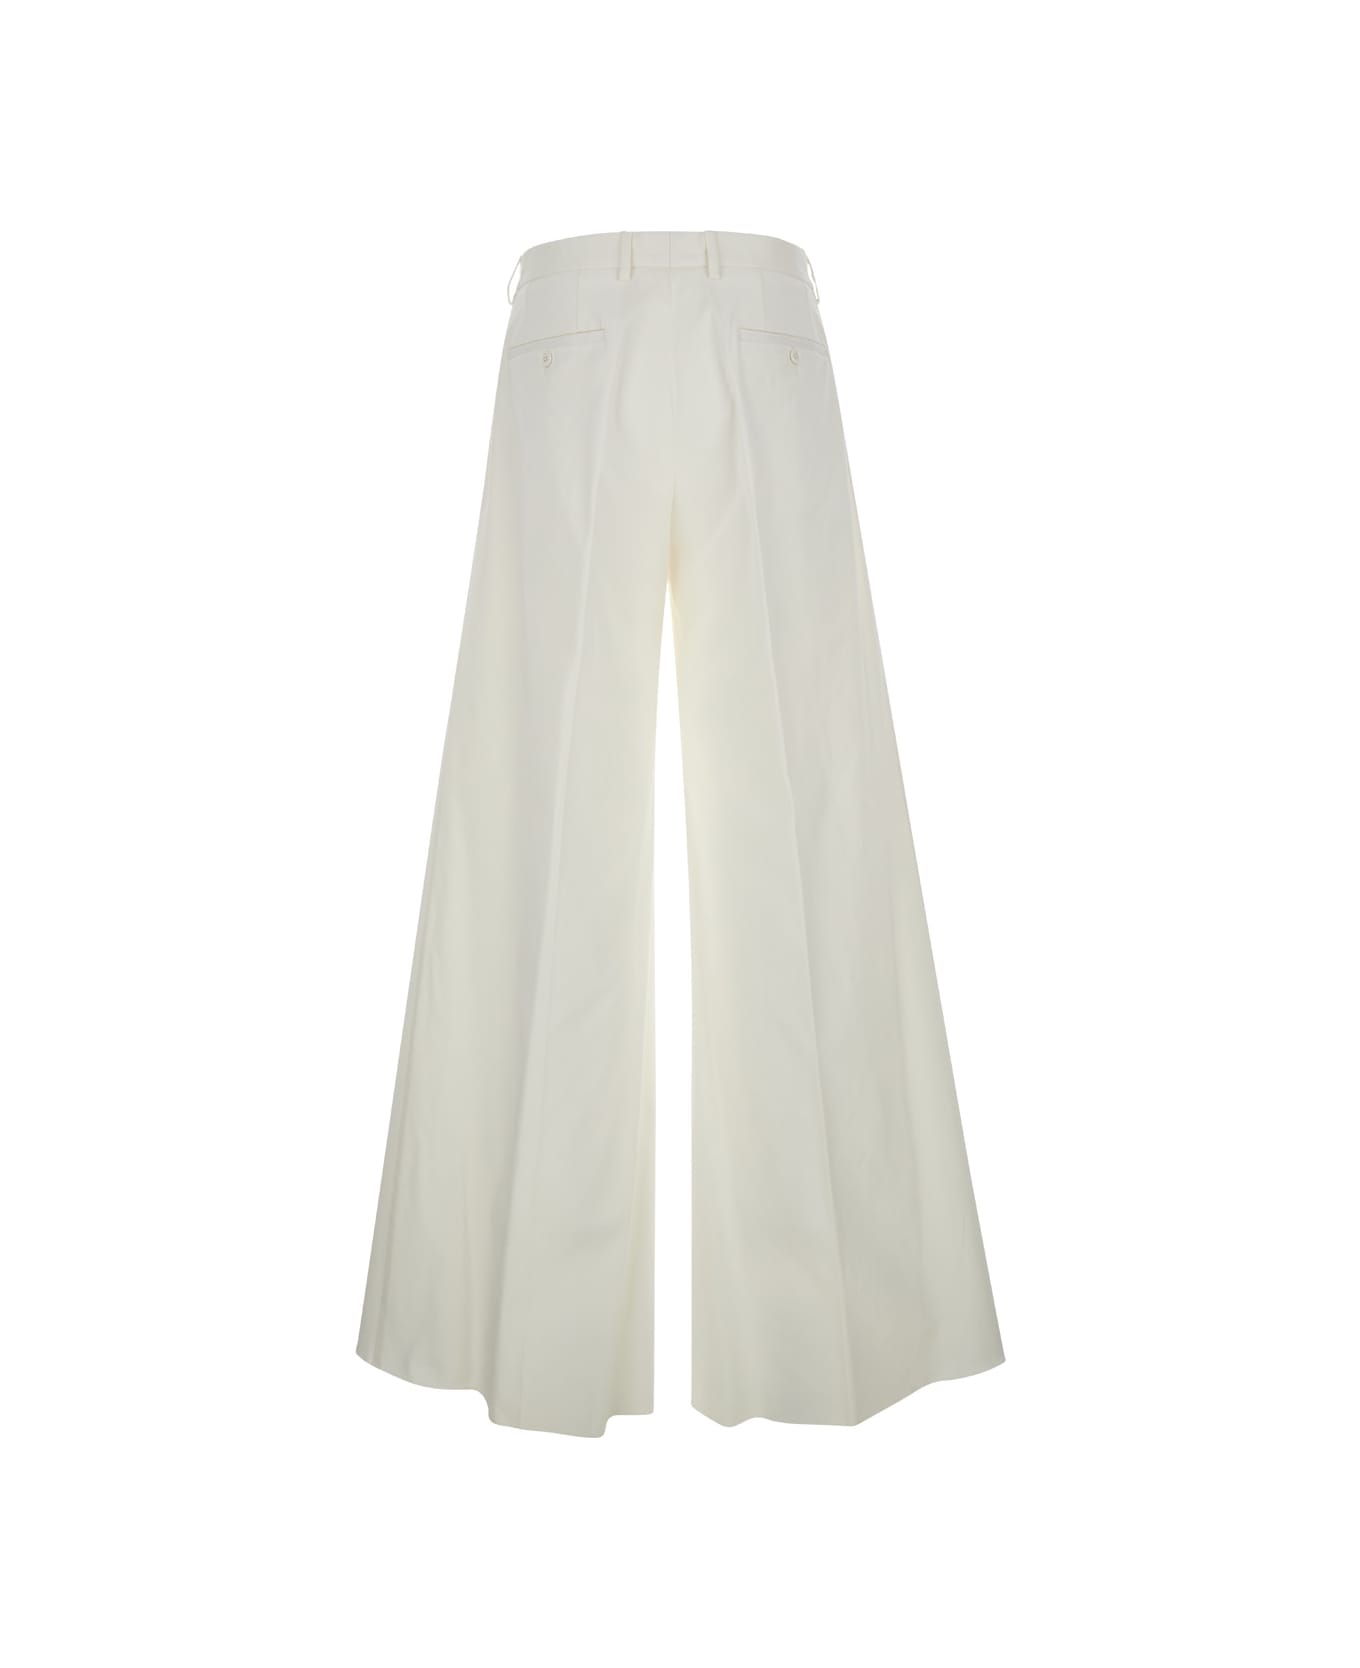 Dolce & Gabbana Look 16/17 Pantalone In Drill Di Cotone - WHITE